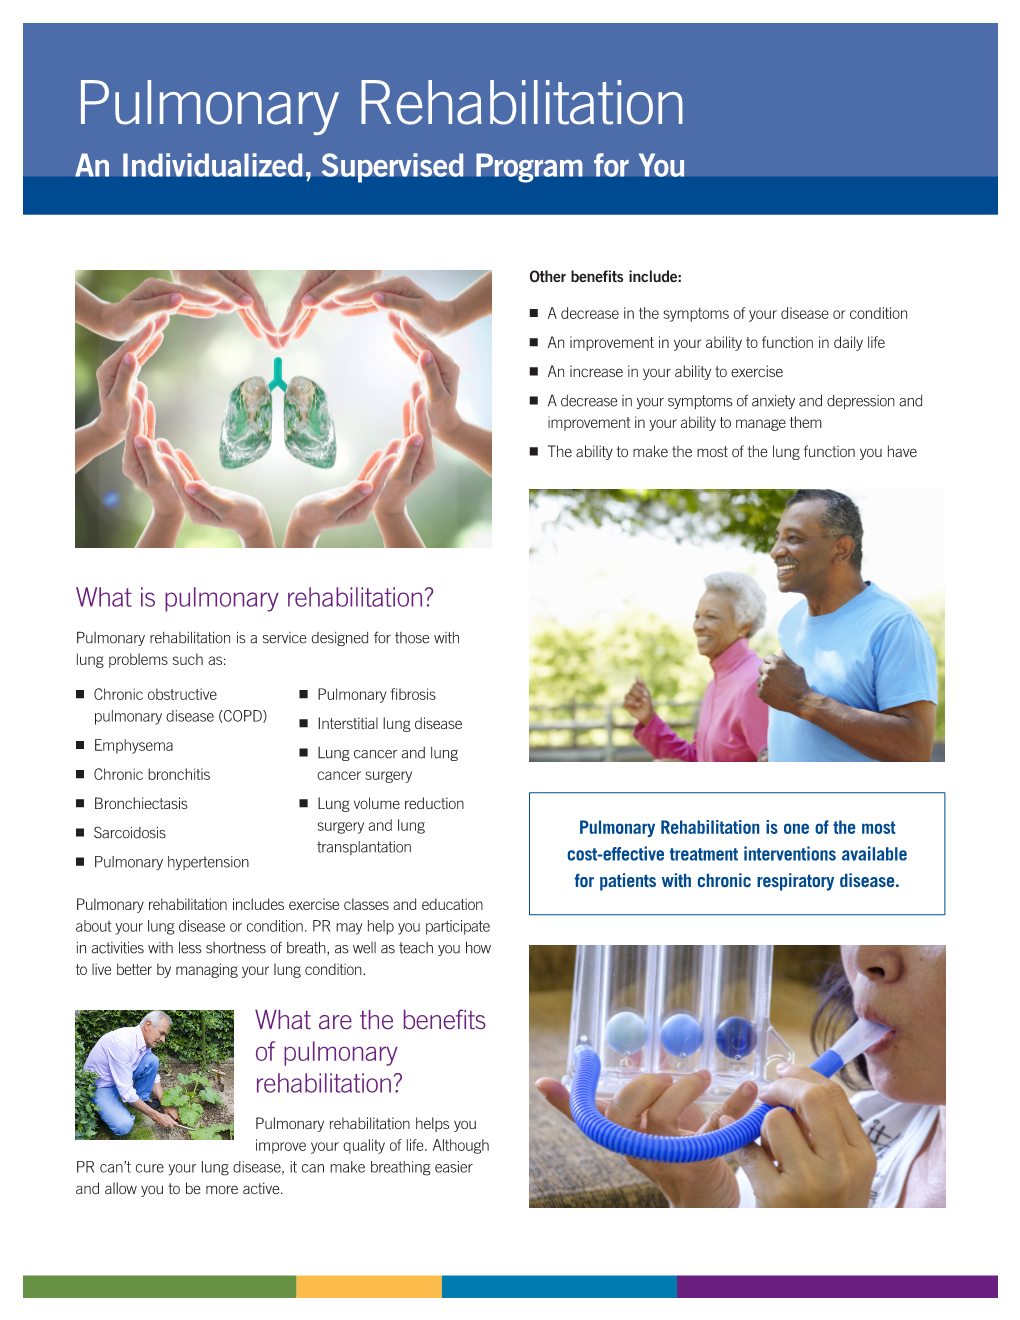 Pulmonary Rehabilitation an Individualized, Supervised Program for You